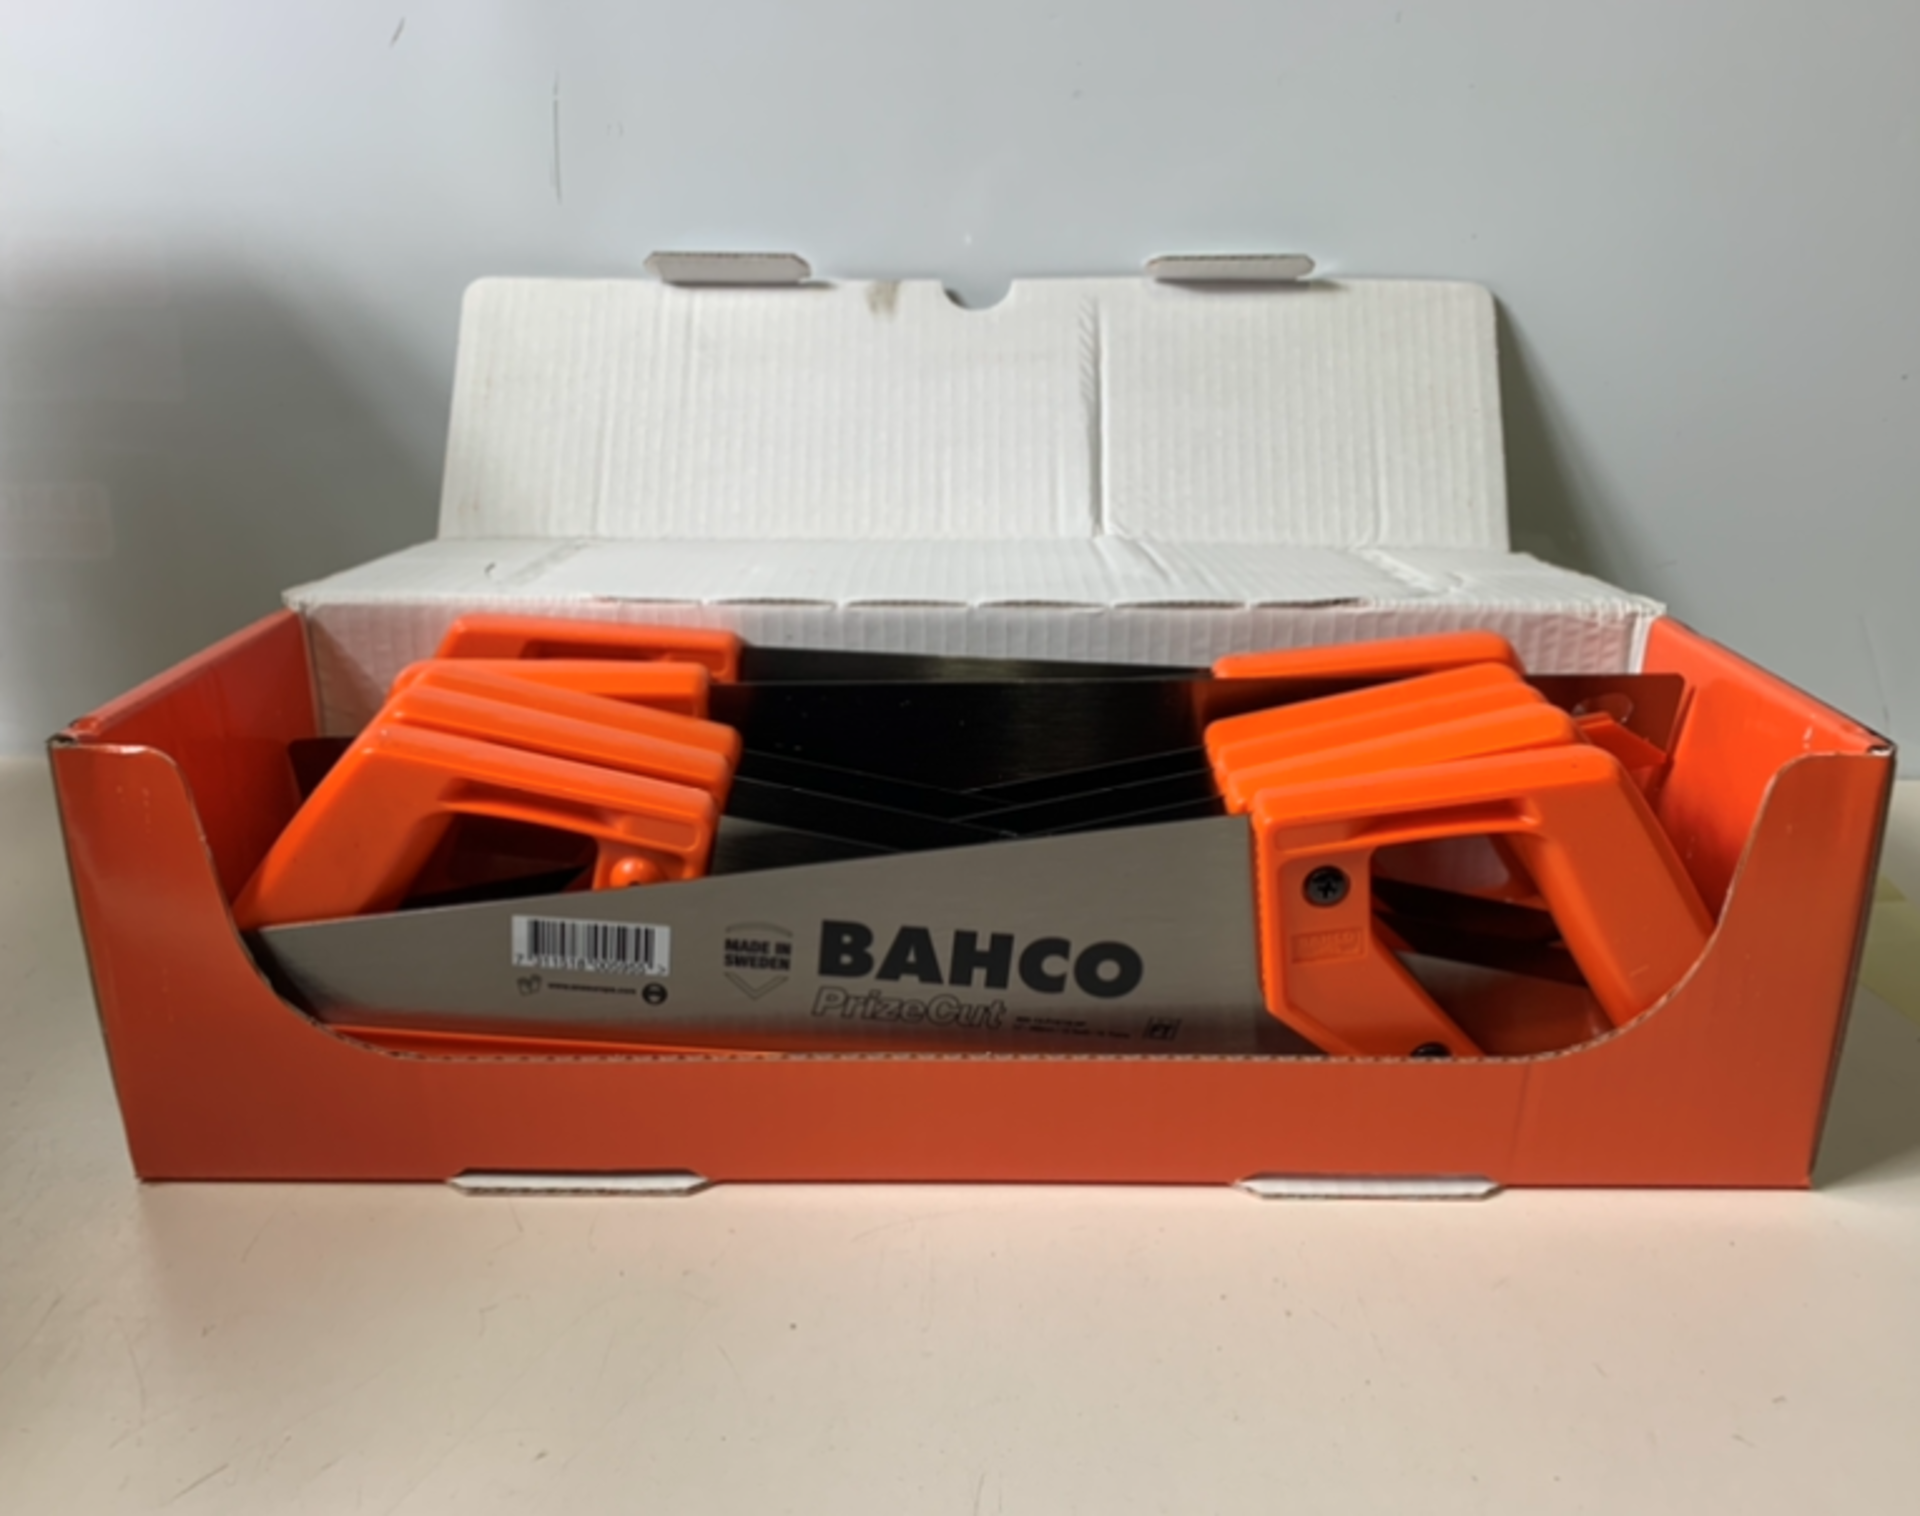 10 x Bahco PrizeCut Toolbox Handsaw BAH300DISP